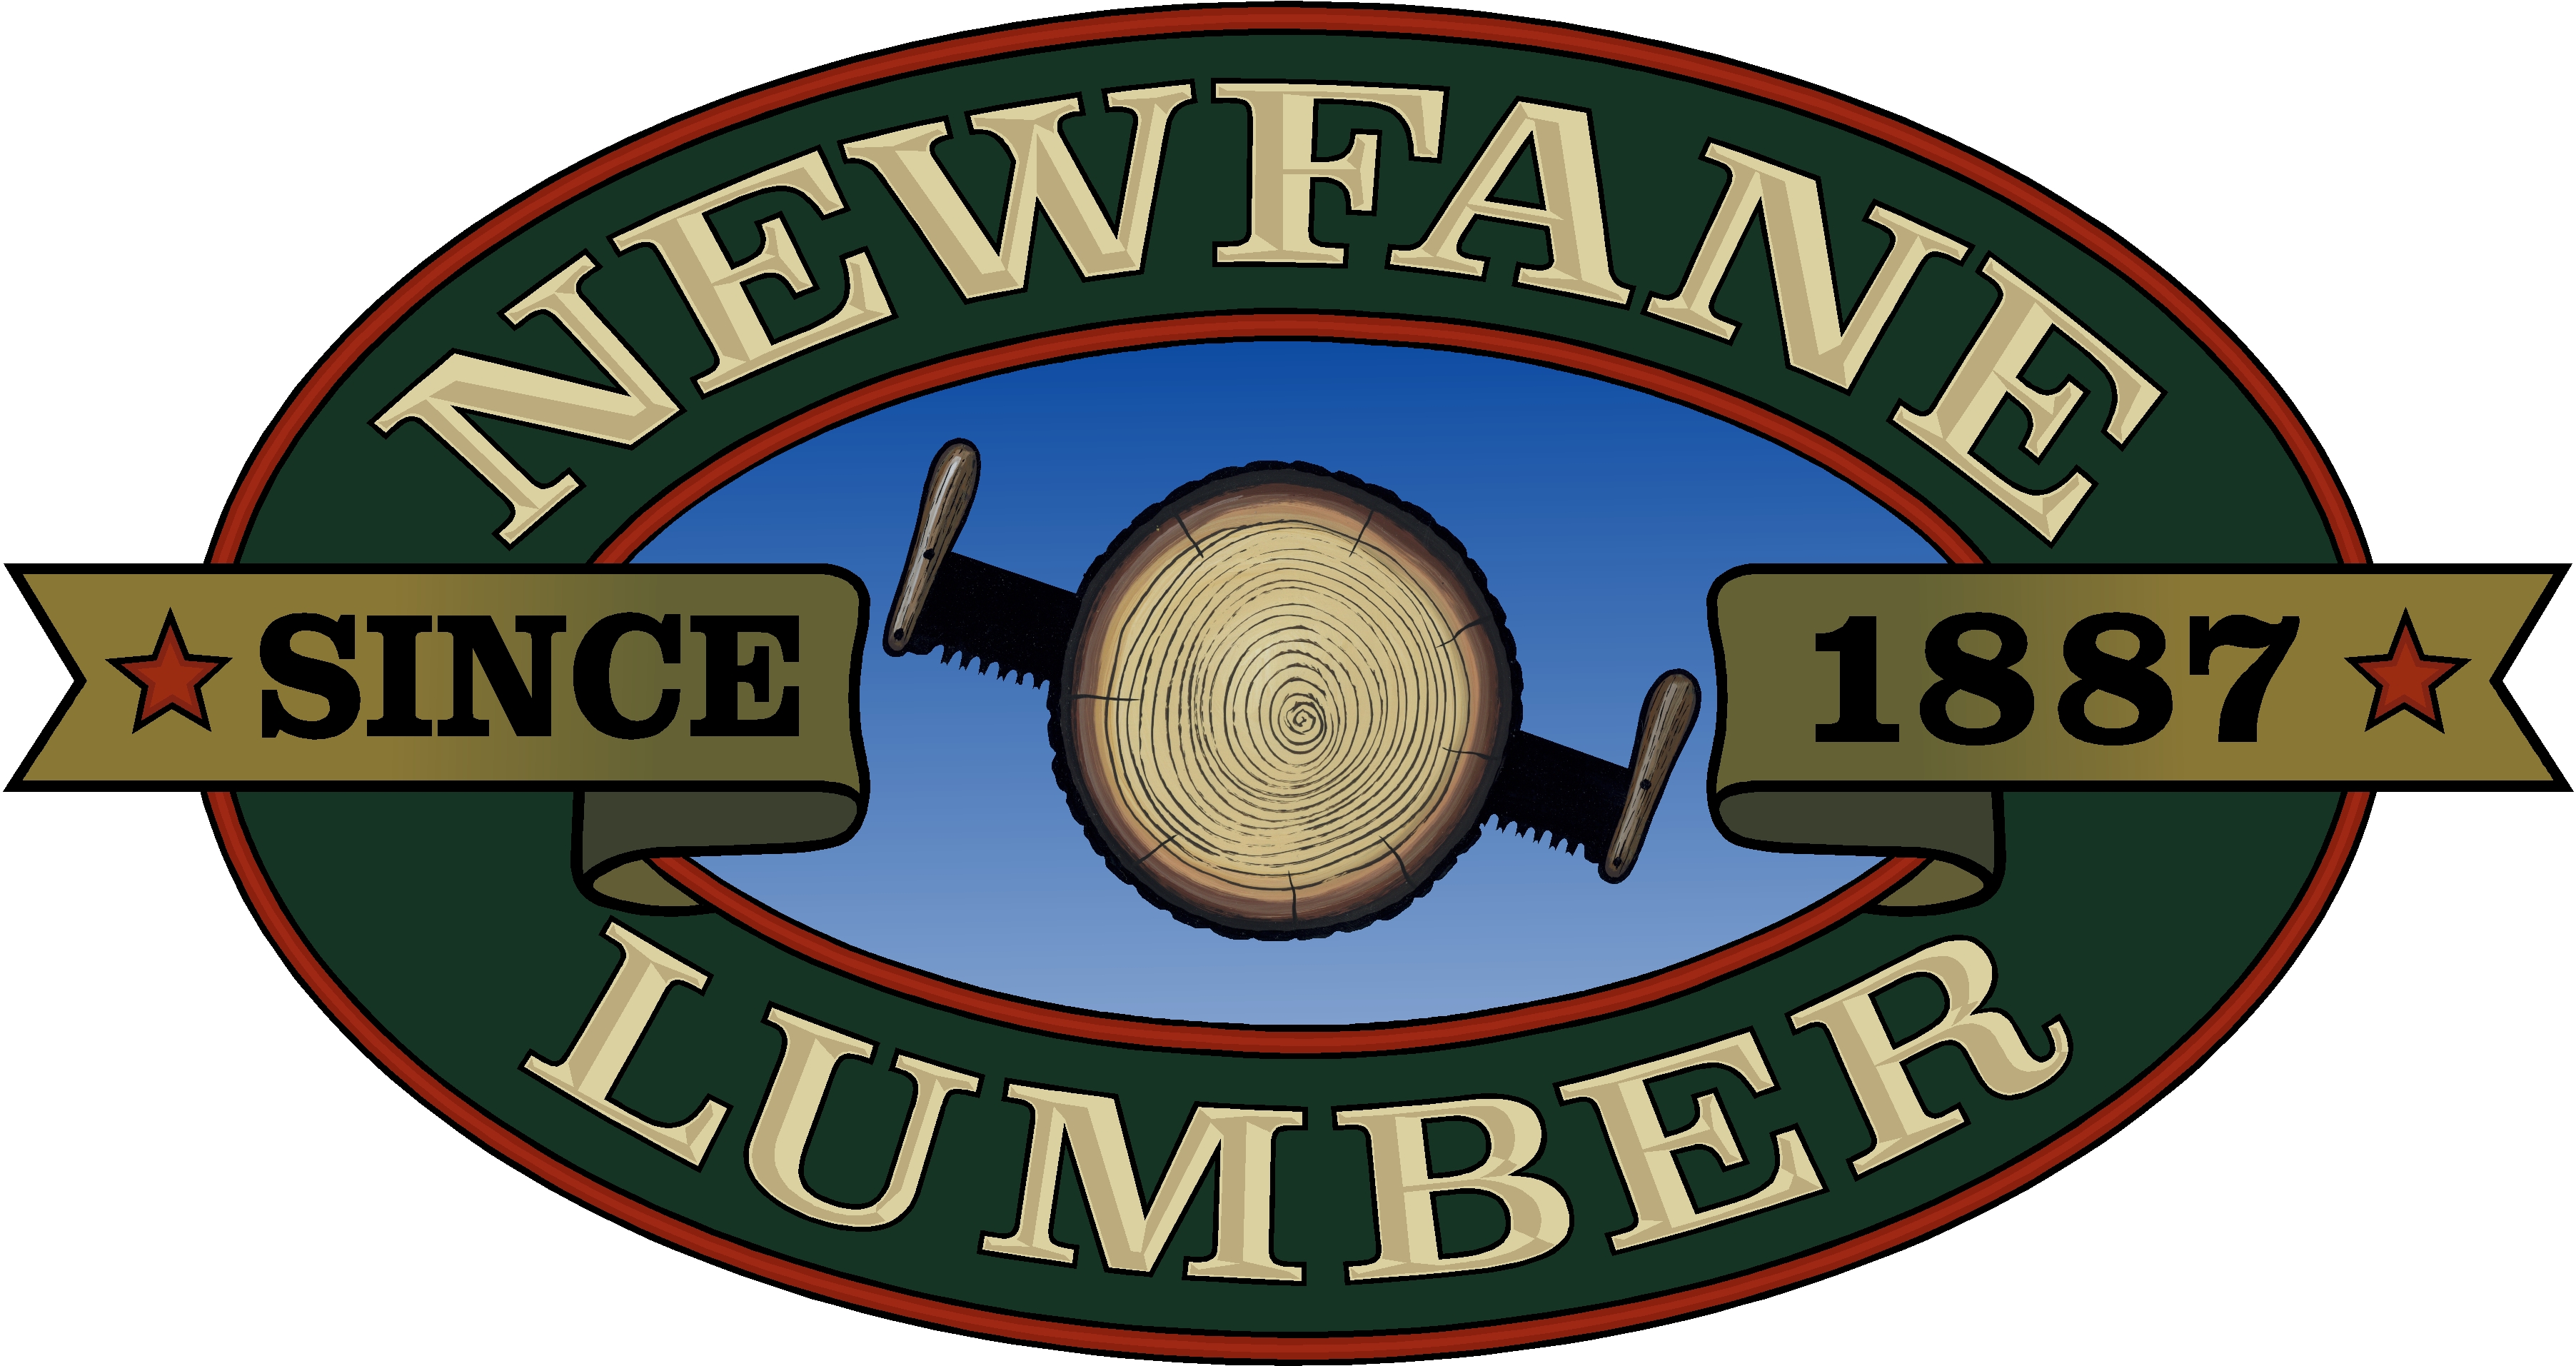 Newfane Lumber & Manufacturing logo